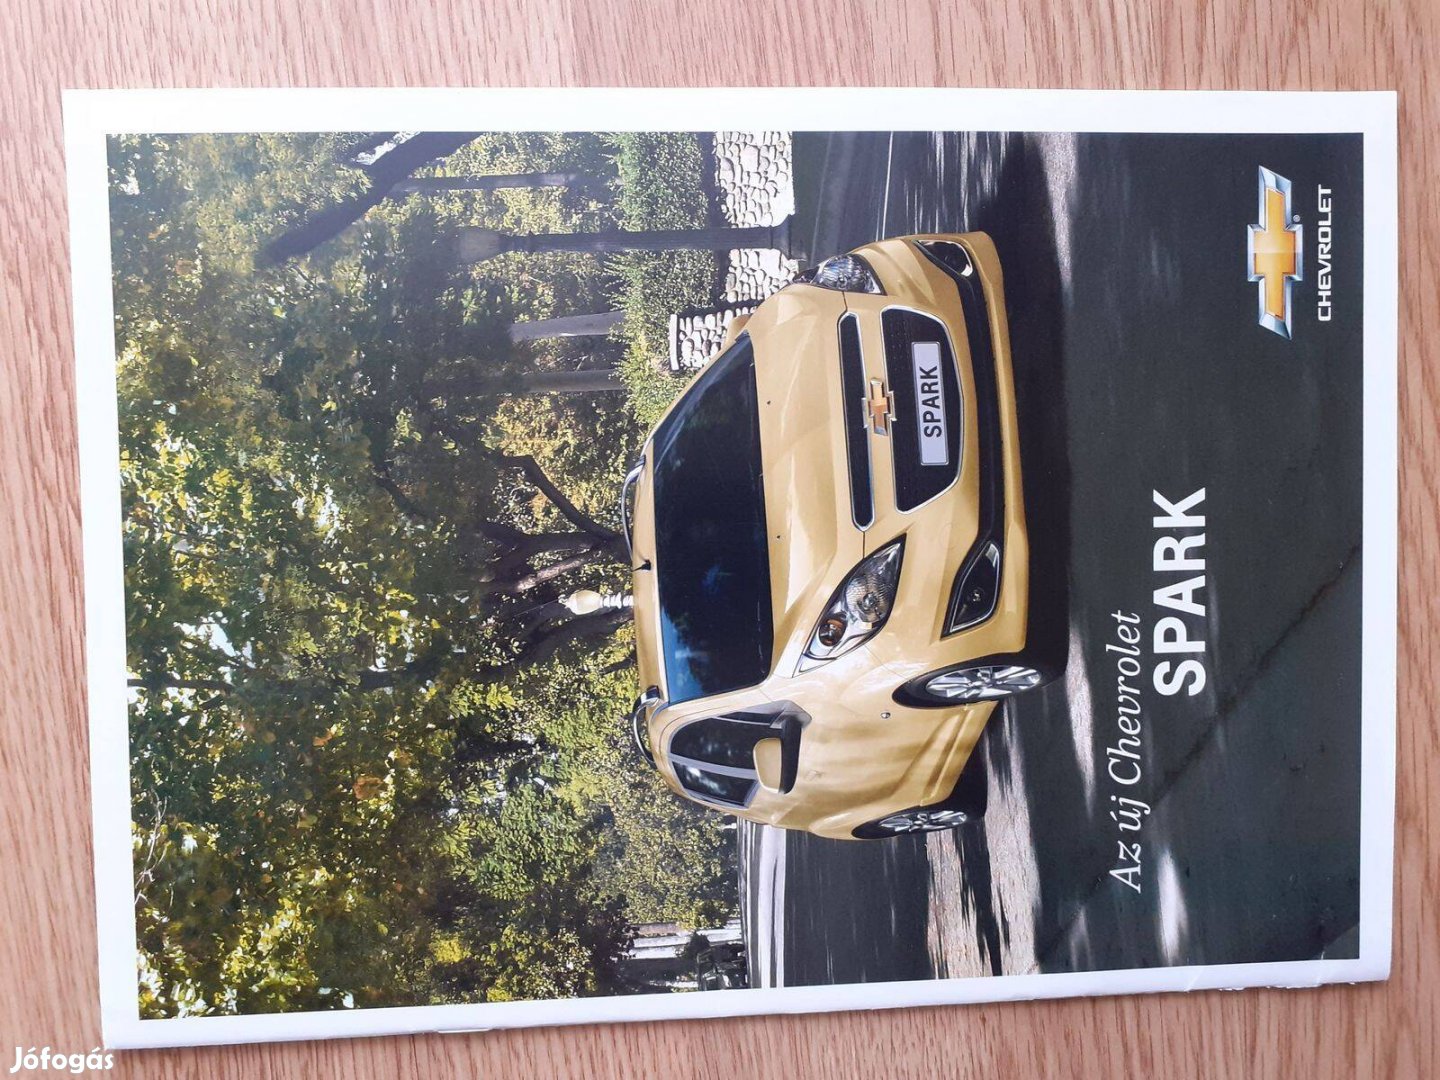 Chevrolet Spark prospektus - 2012, magyar nyelvű